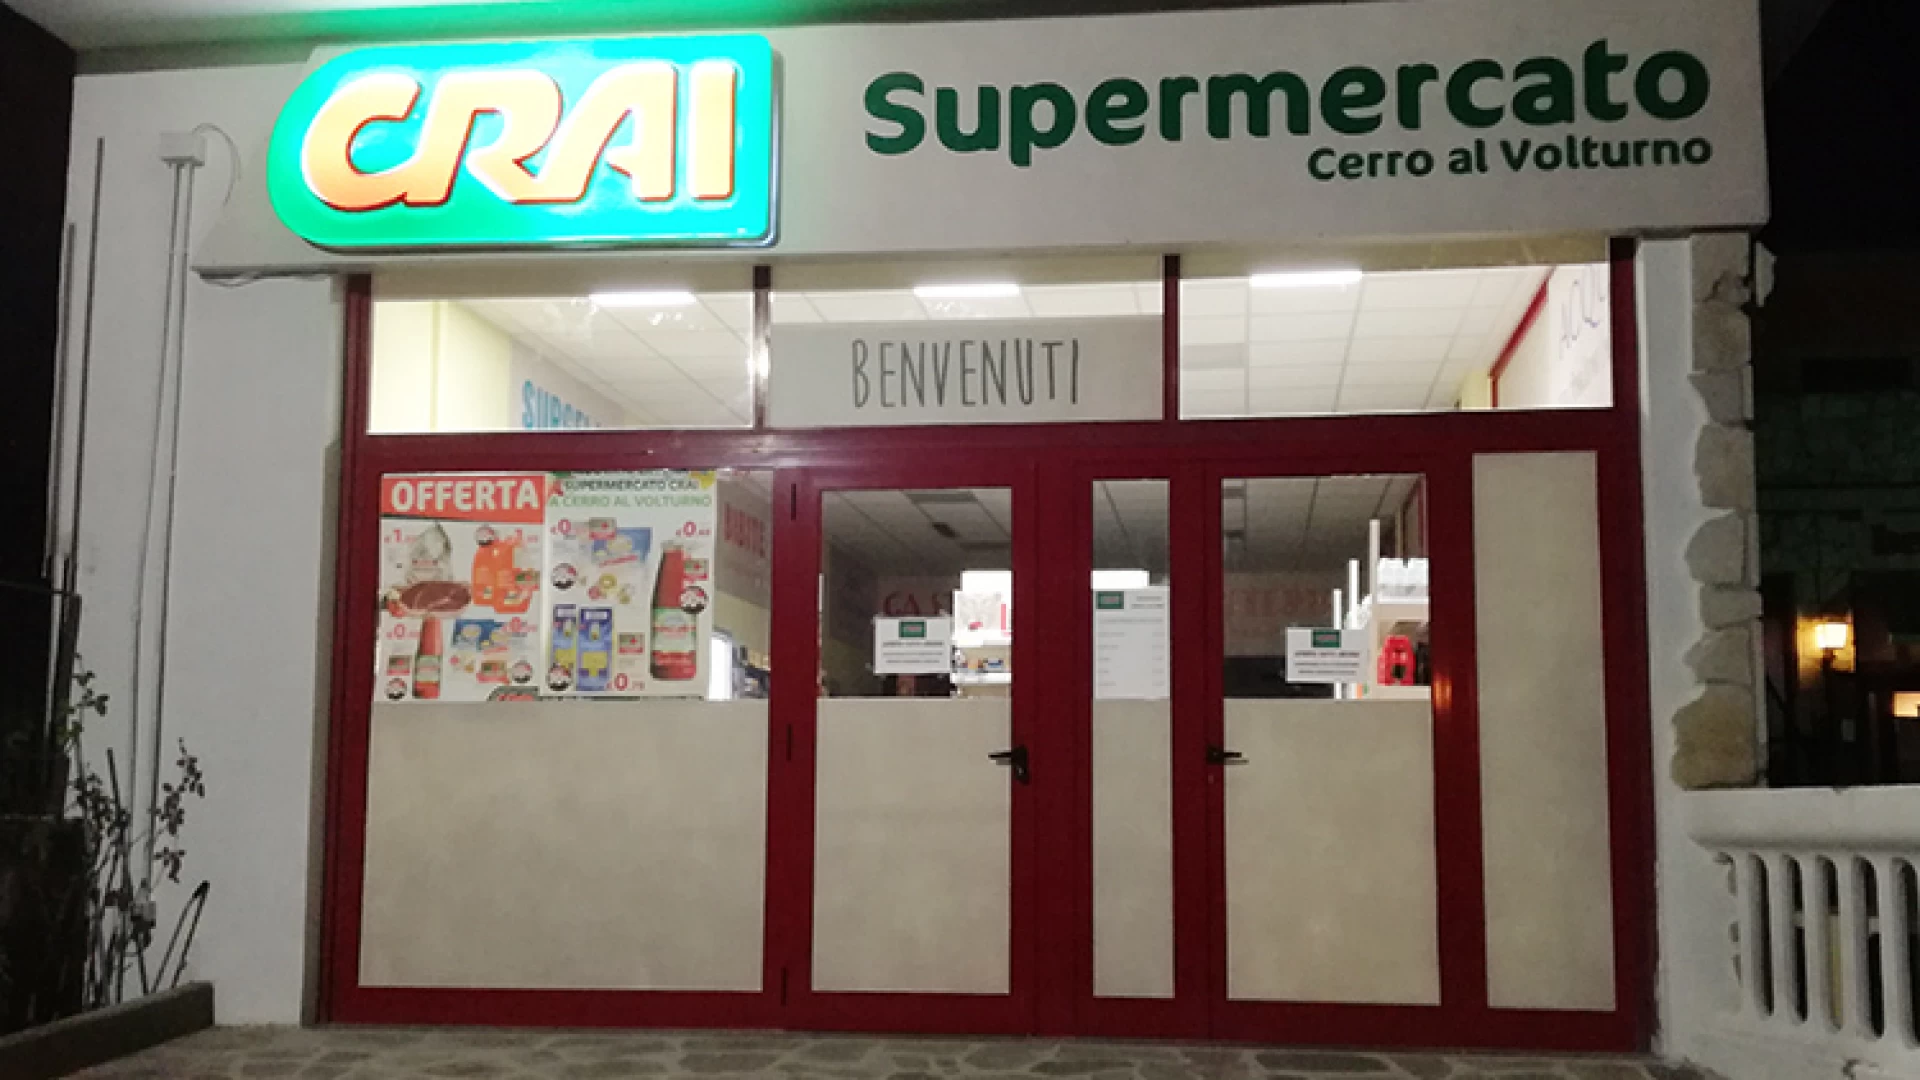 Cerro al Volturno (le aziende informano): le nuove offerte del supermercato Crai